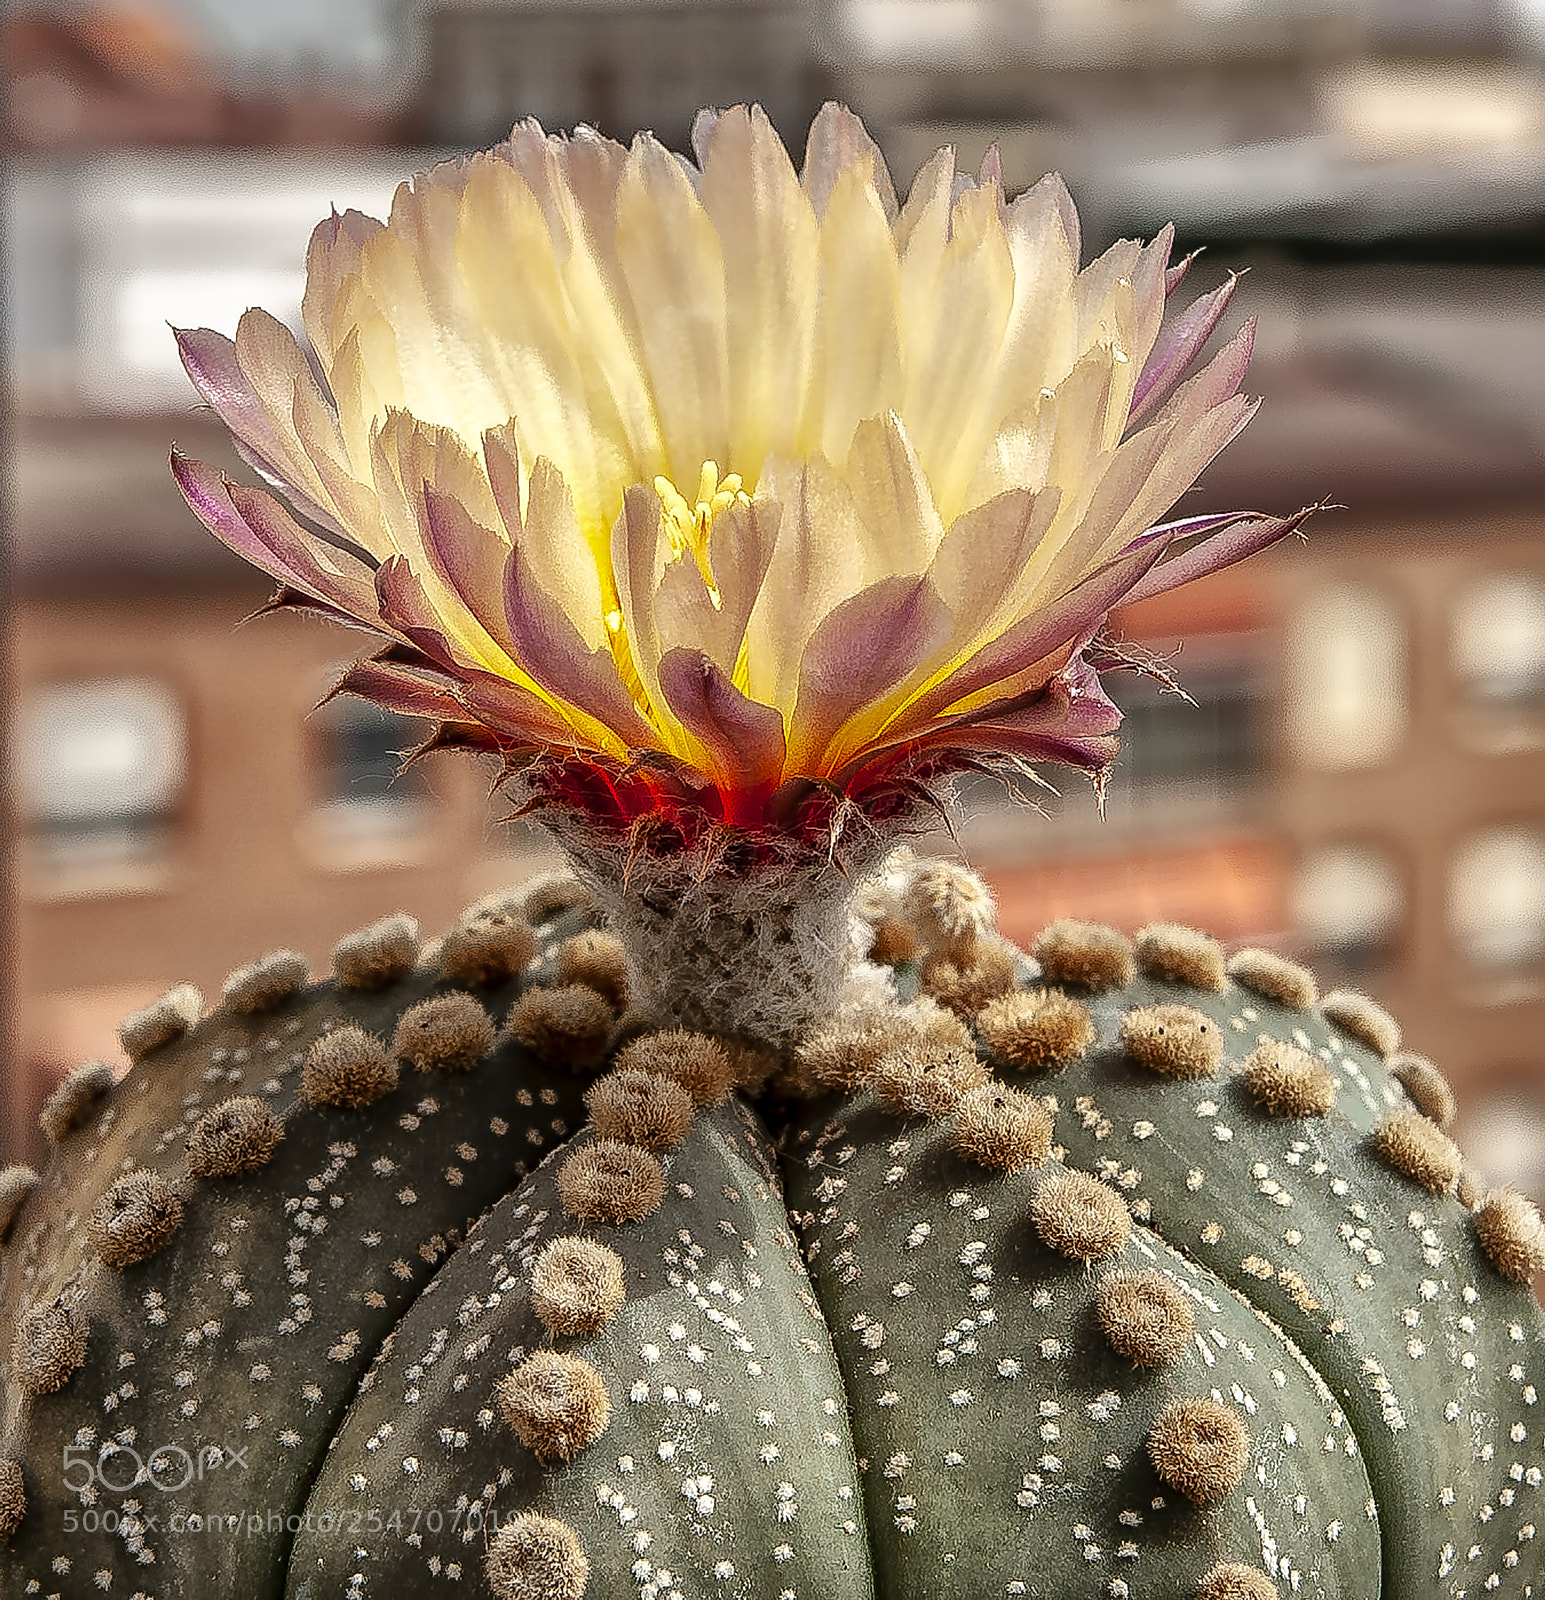 Nikon D700 sample photo. Cactus photography